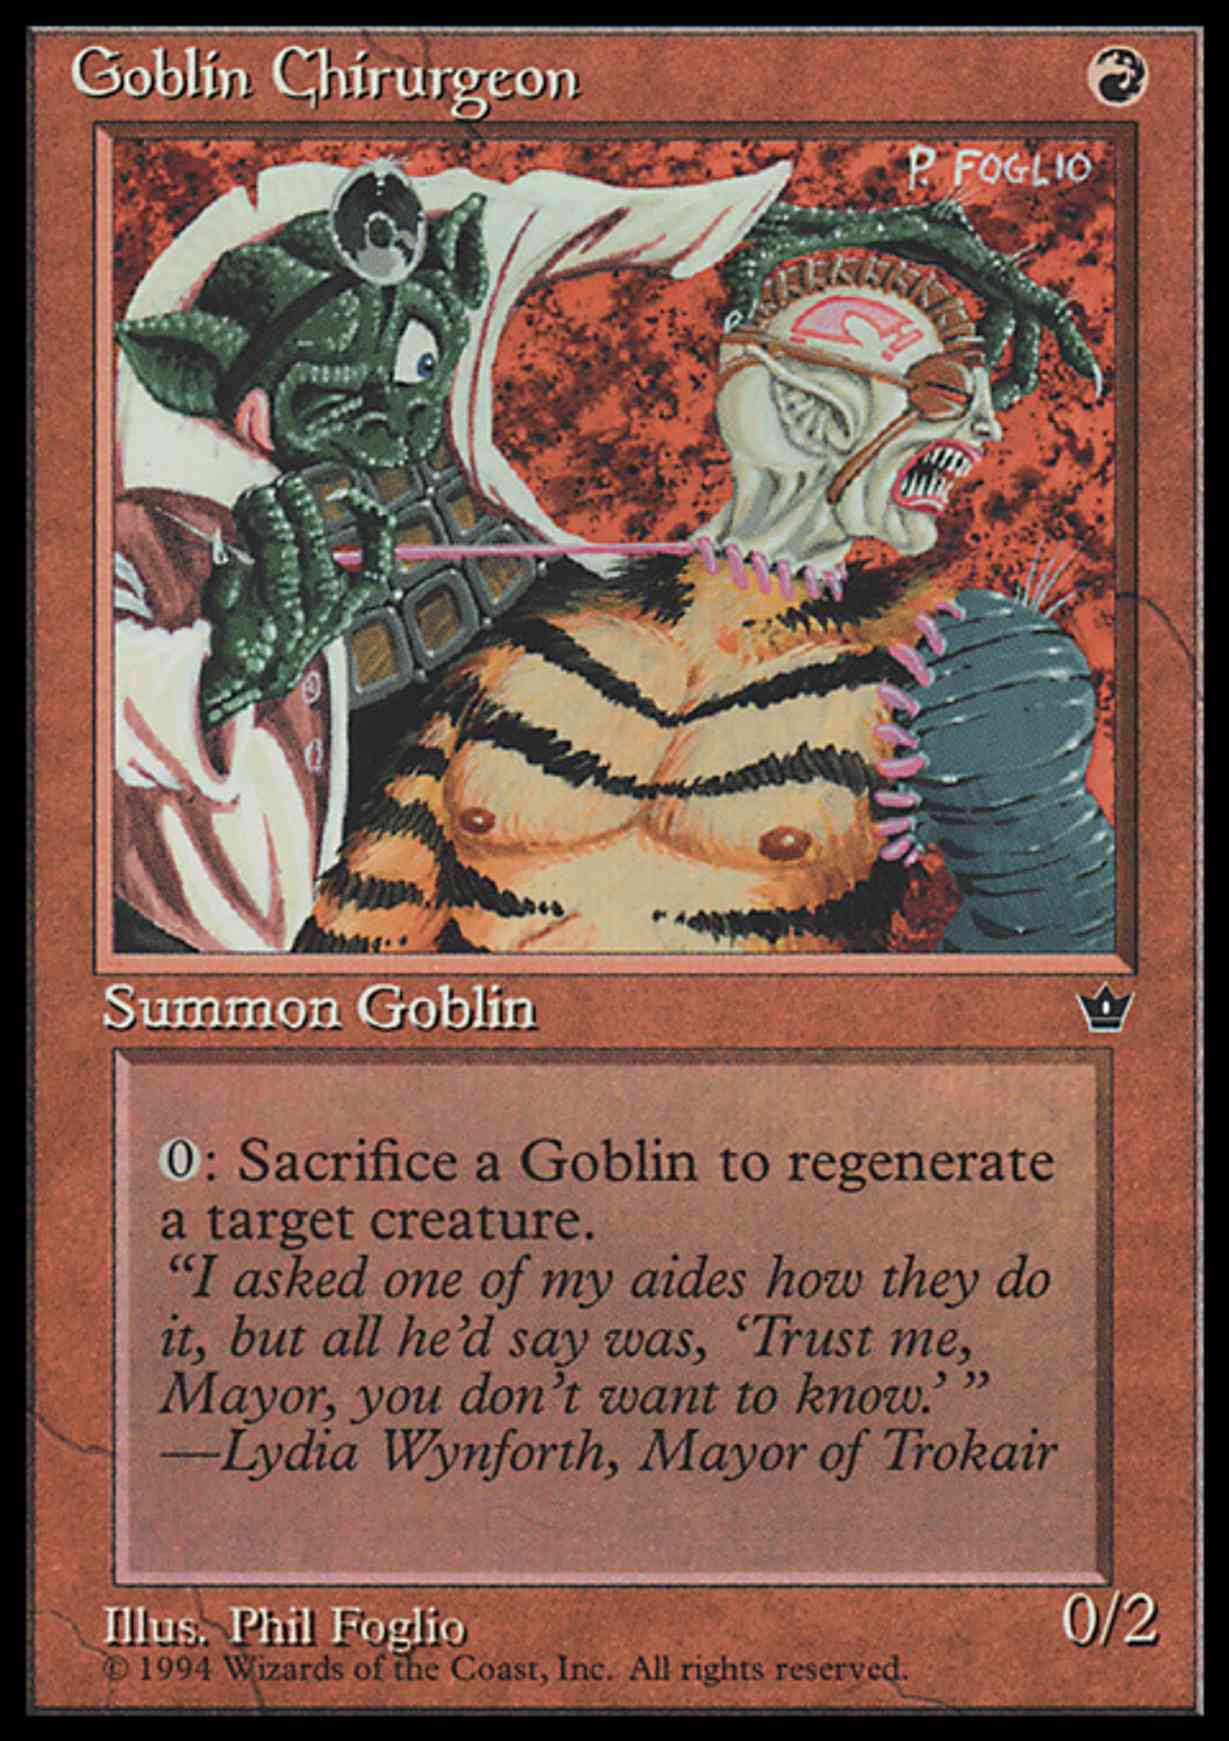 Goblin Chirurgeon (Foglio) magic card front